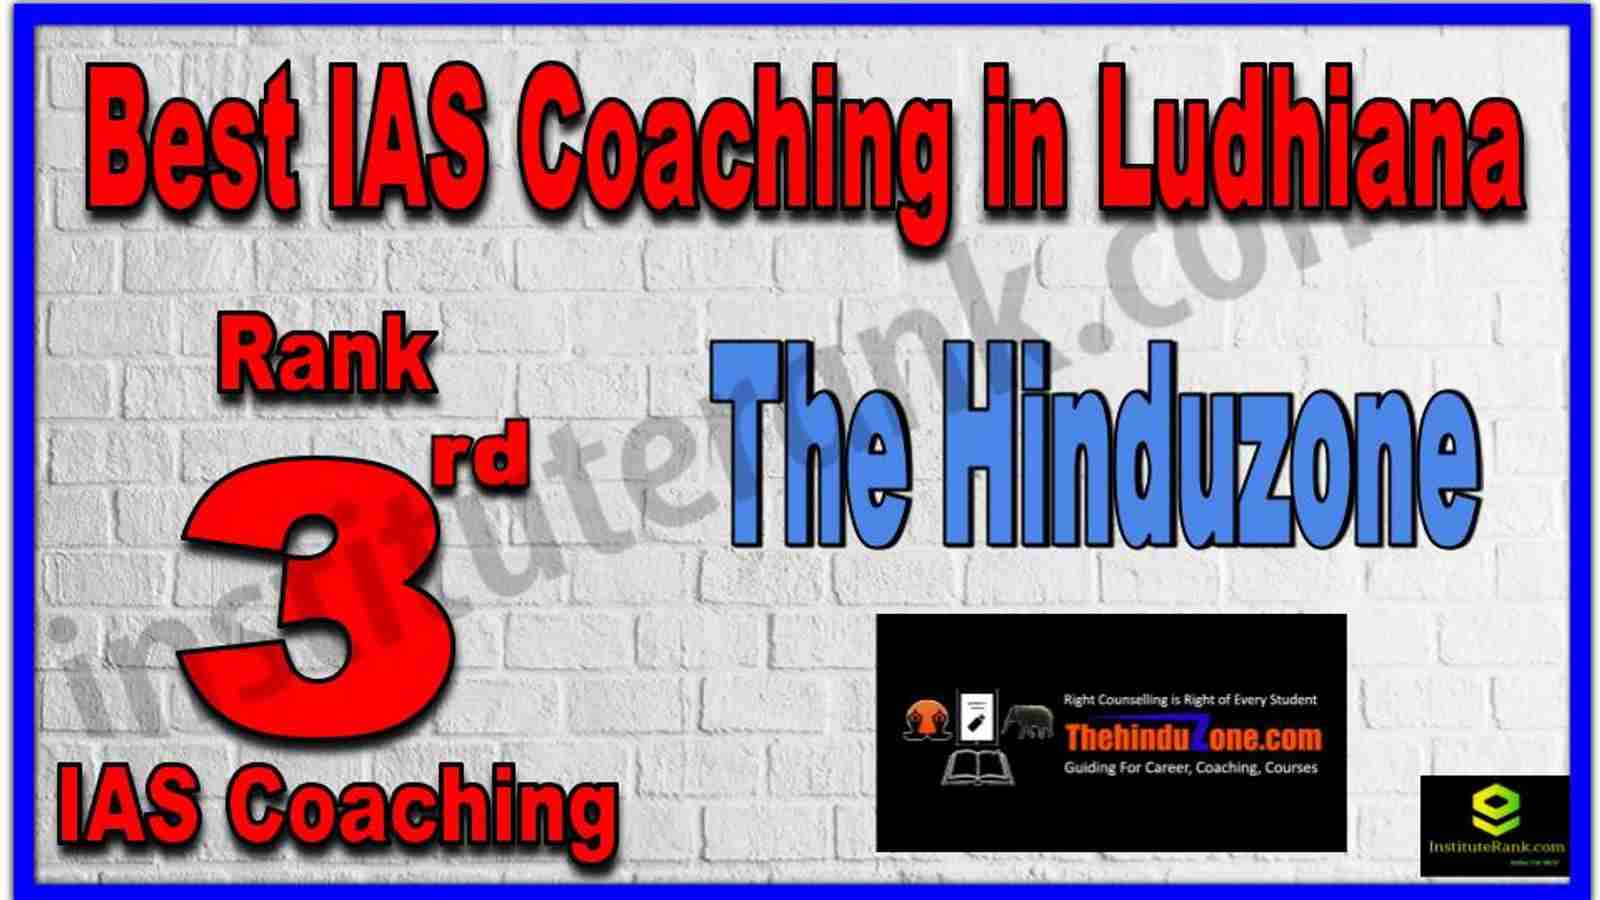 Rank 3rd Best IAS Coaching in Ludhiana